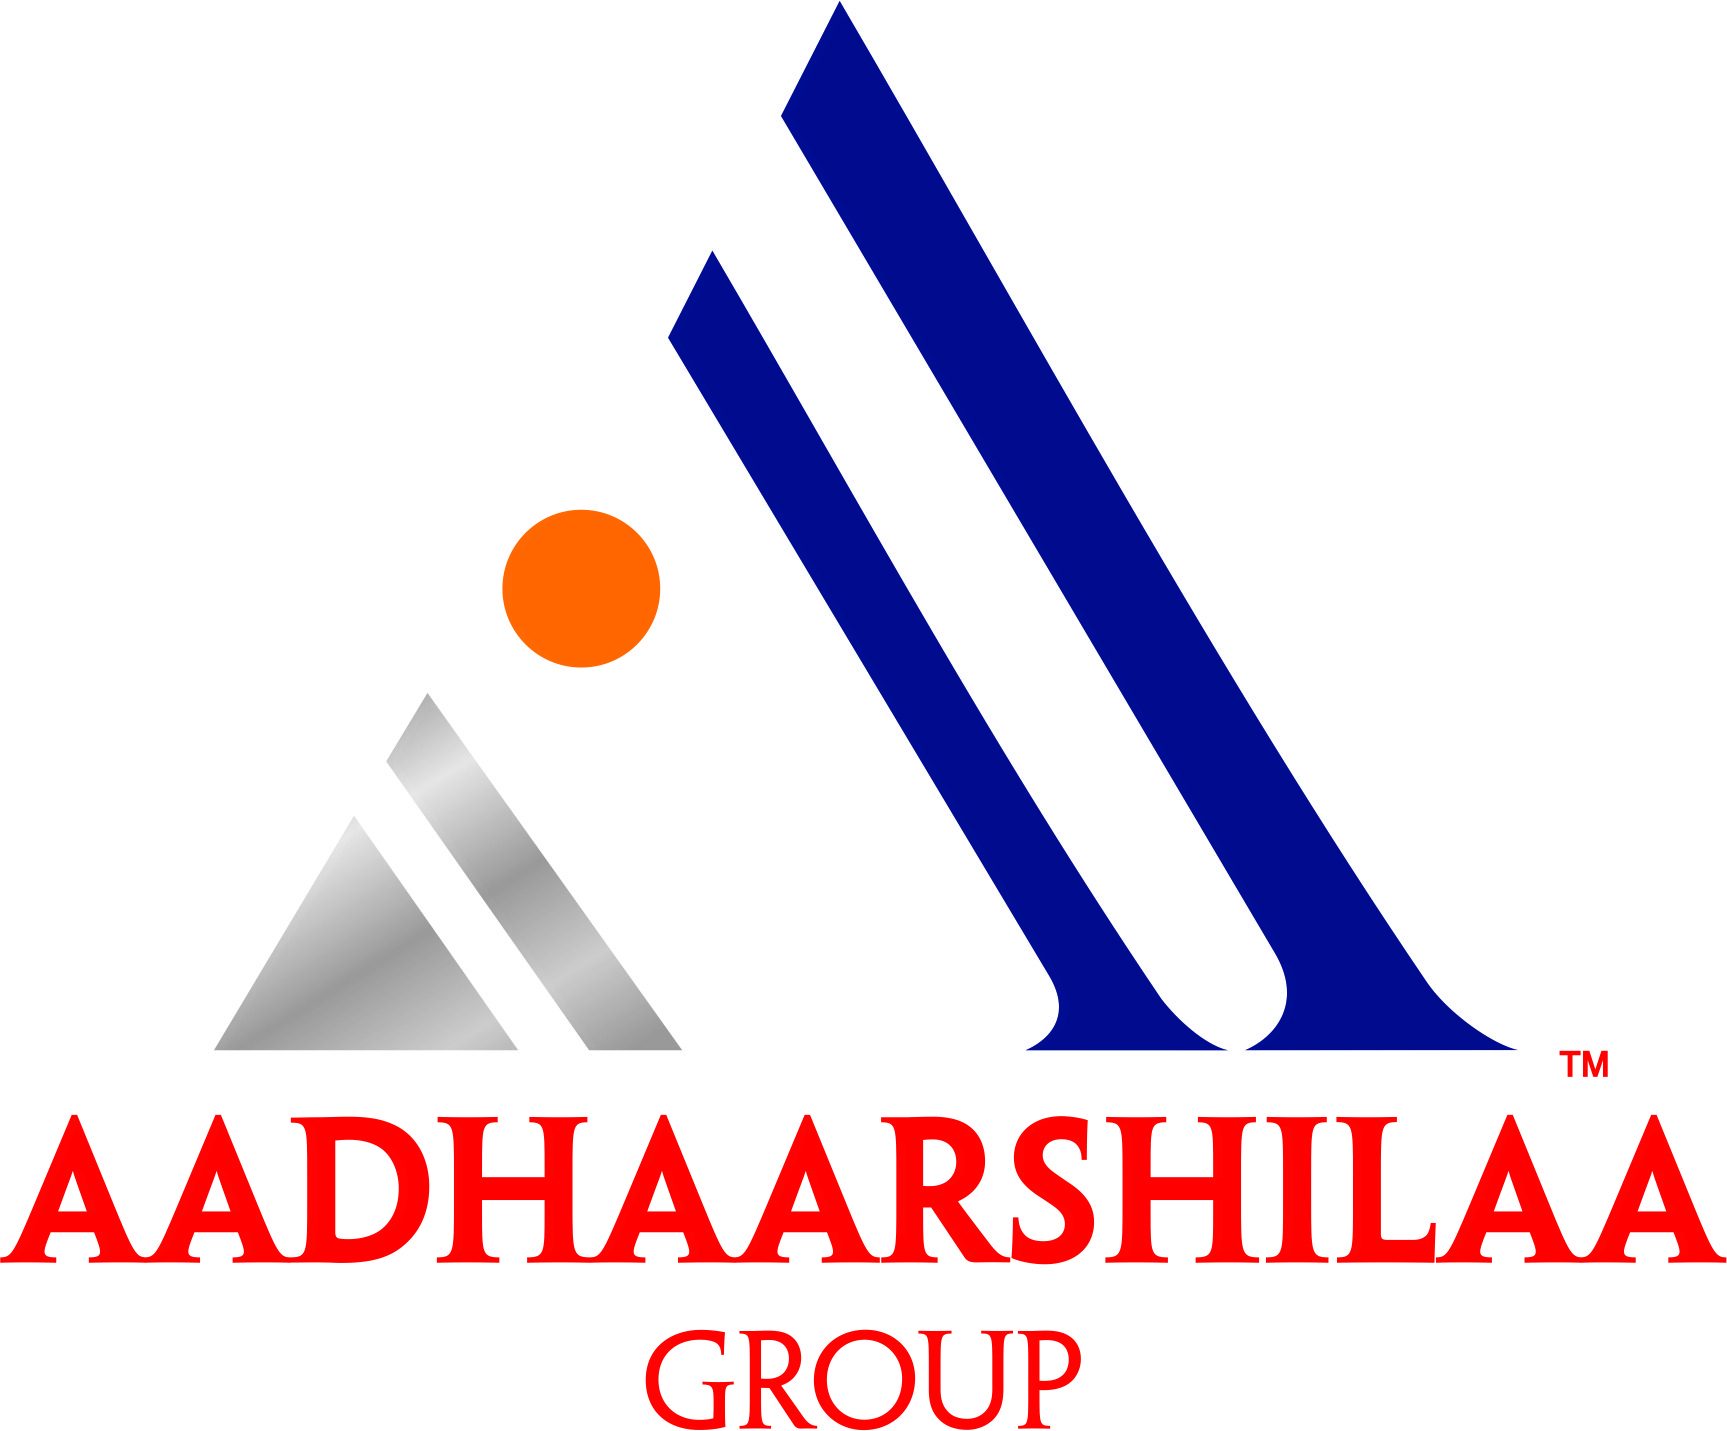 Aadhaarshilaa Group